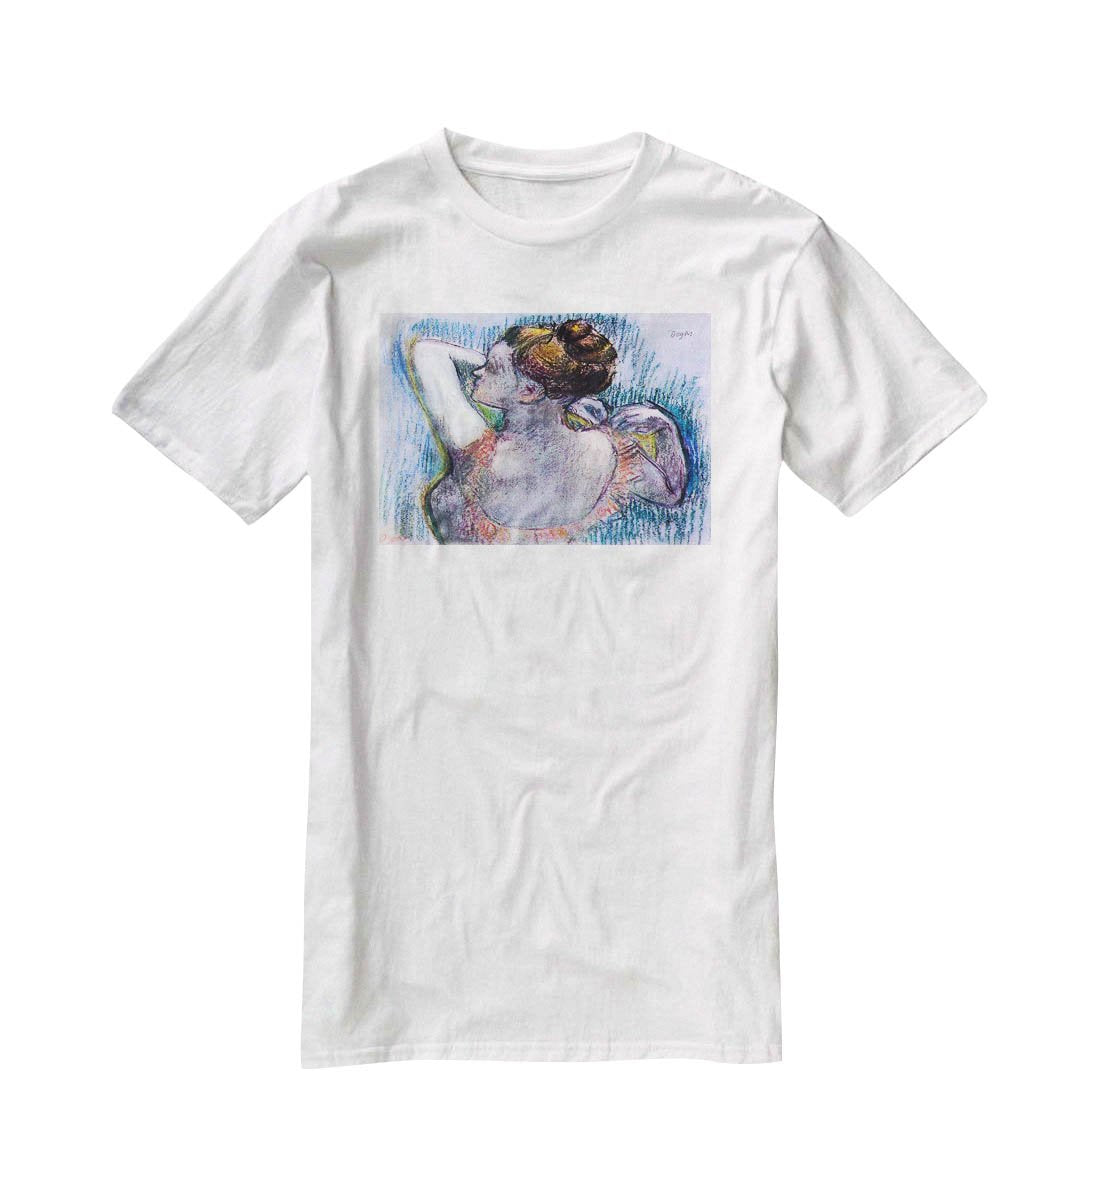 Dancer 1 by Degas T-Shirt - Canvas Art Rocks - 5